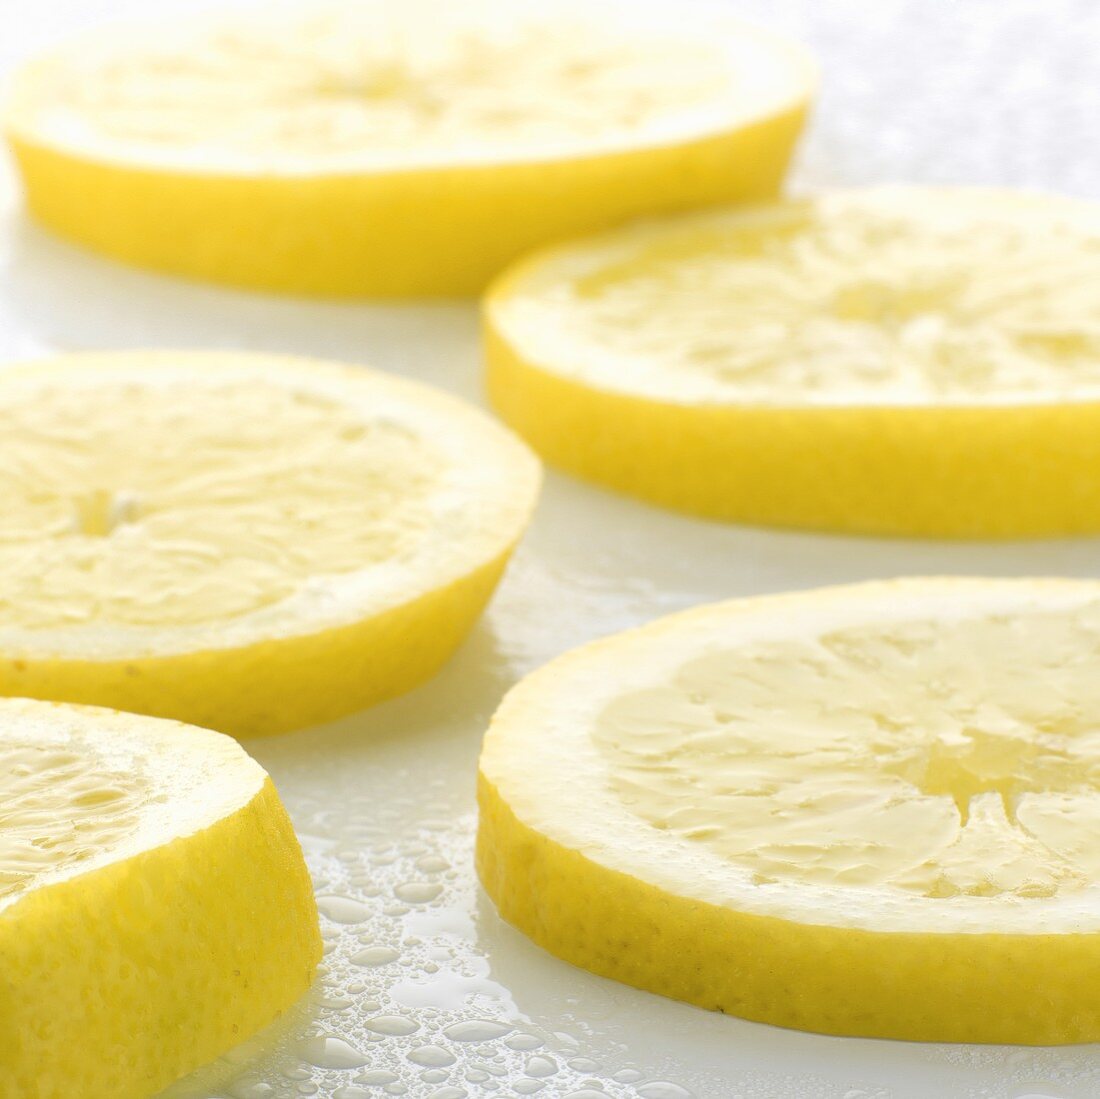 Several slices of lemon